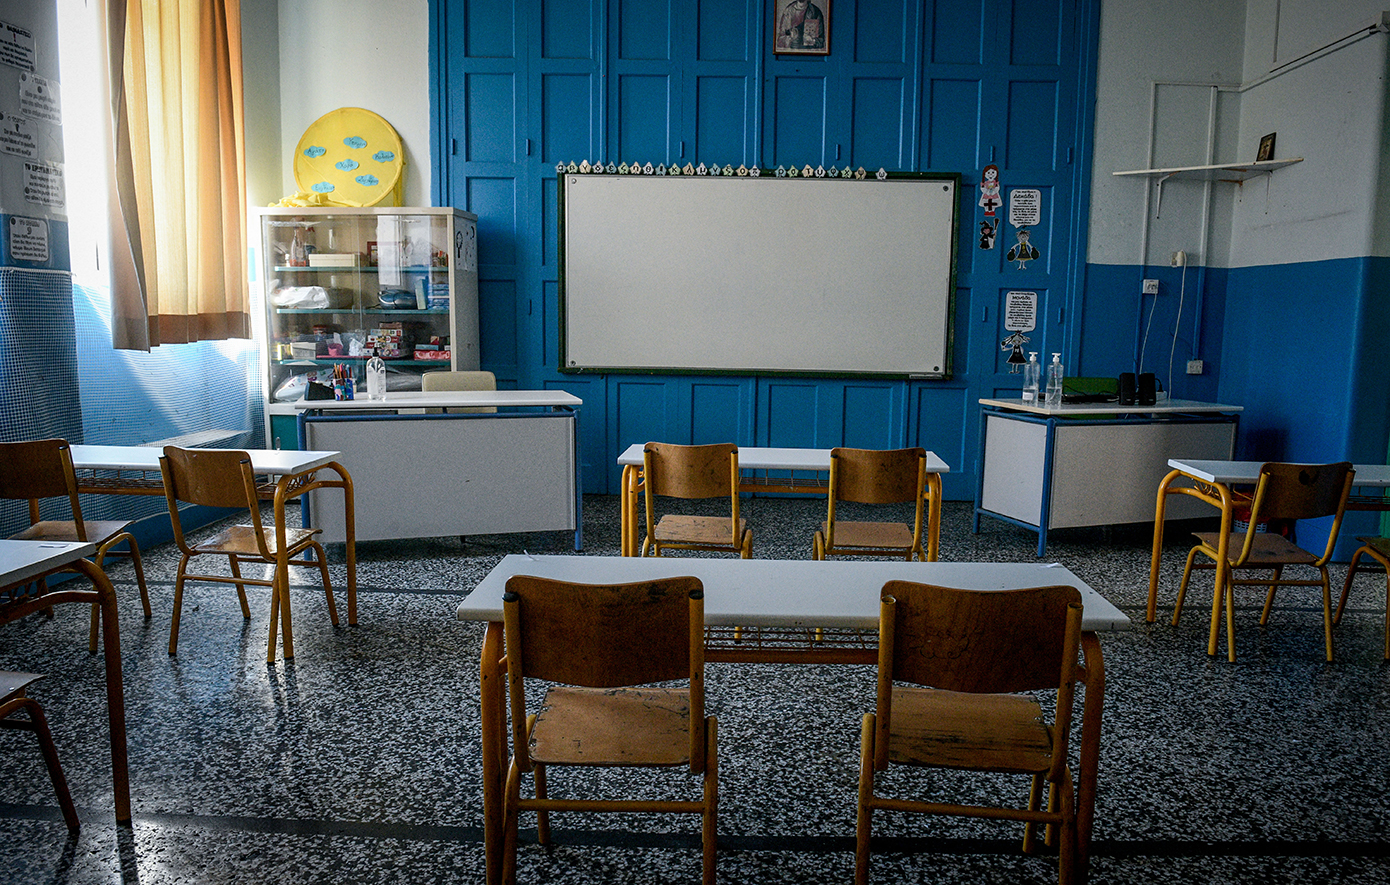 Κλείνει σχολείο των Ιωαννίνων λόγω στρεπτόκοκκου